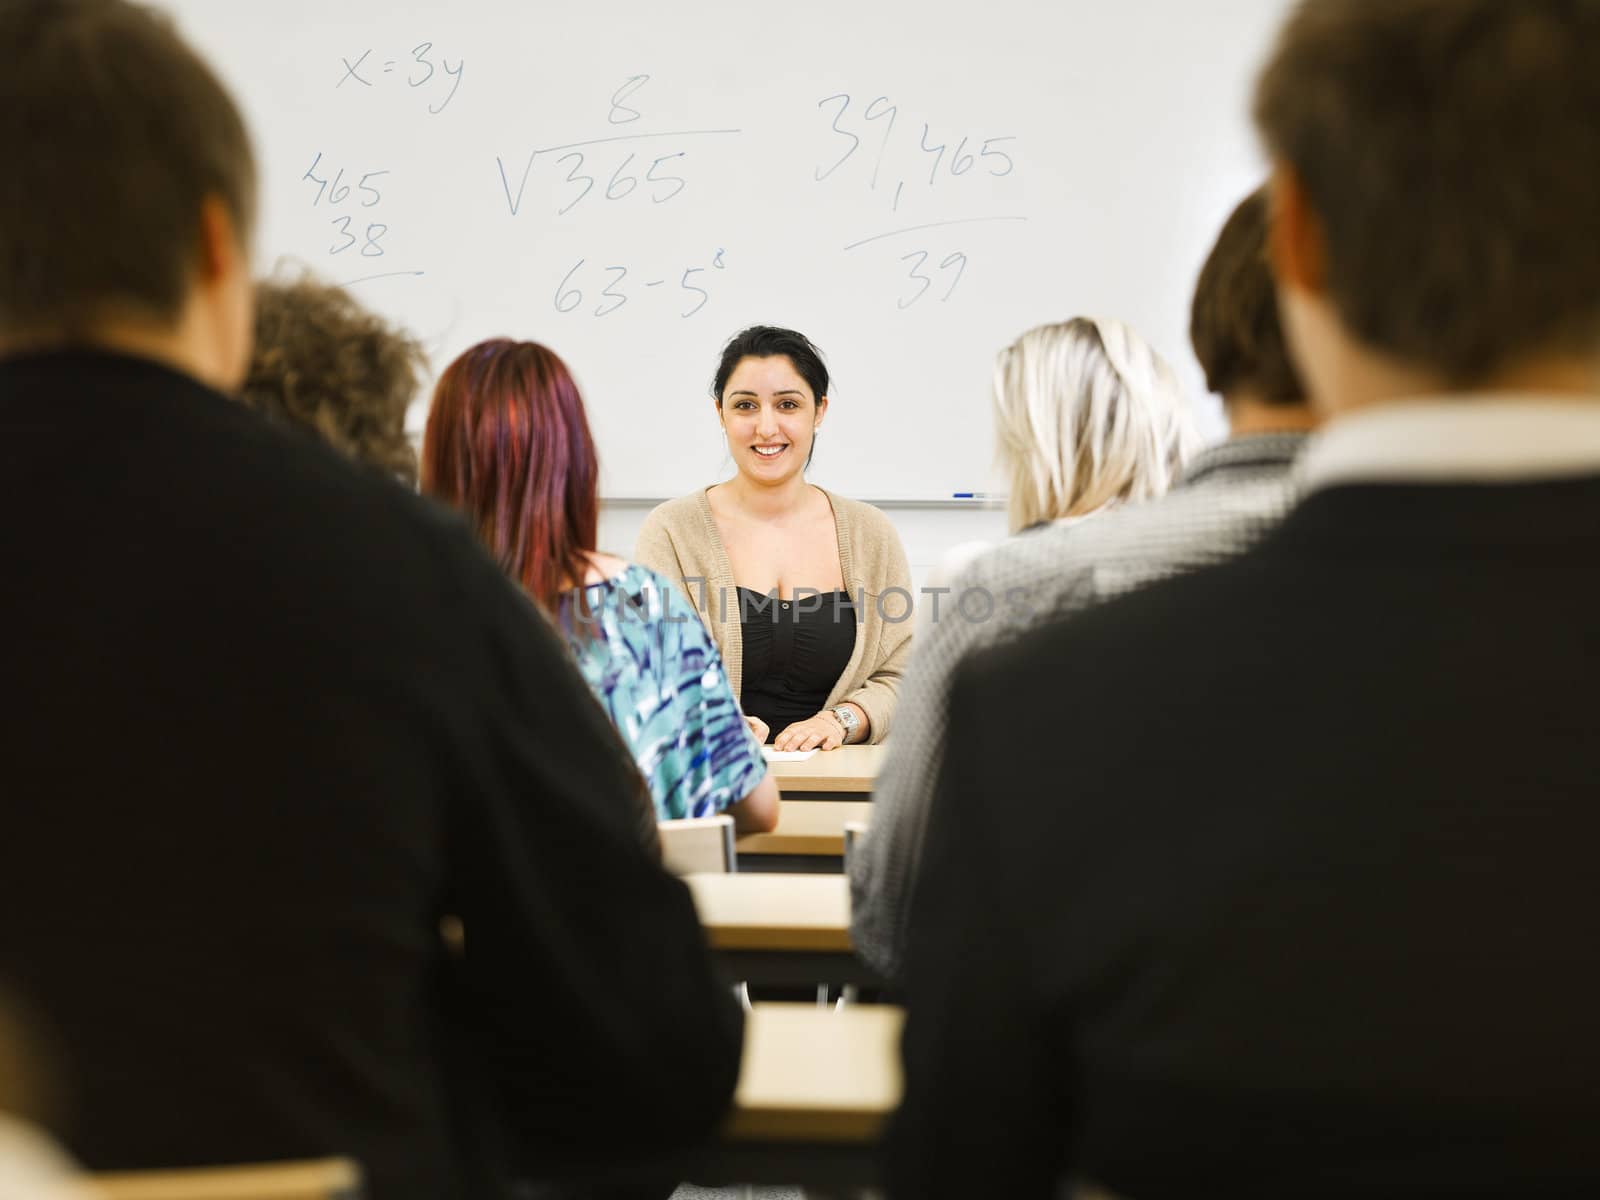 Schoolteacher in front of pupils in the classroom